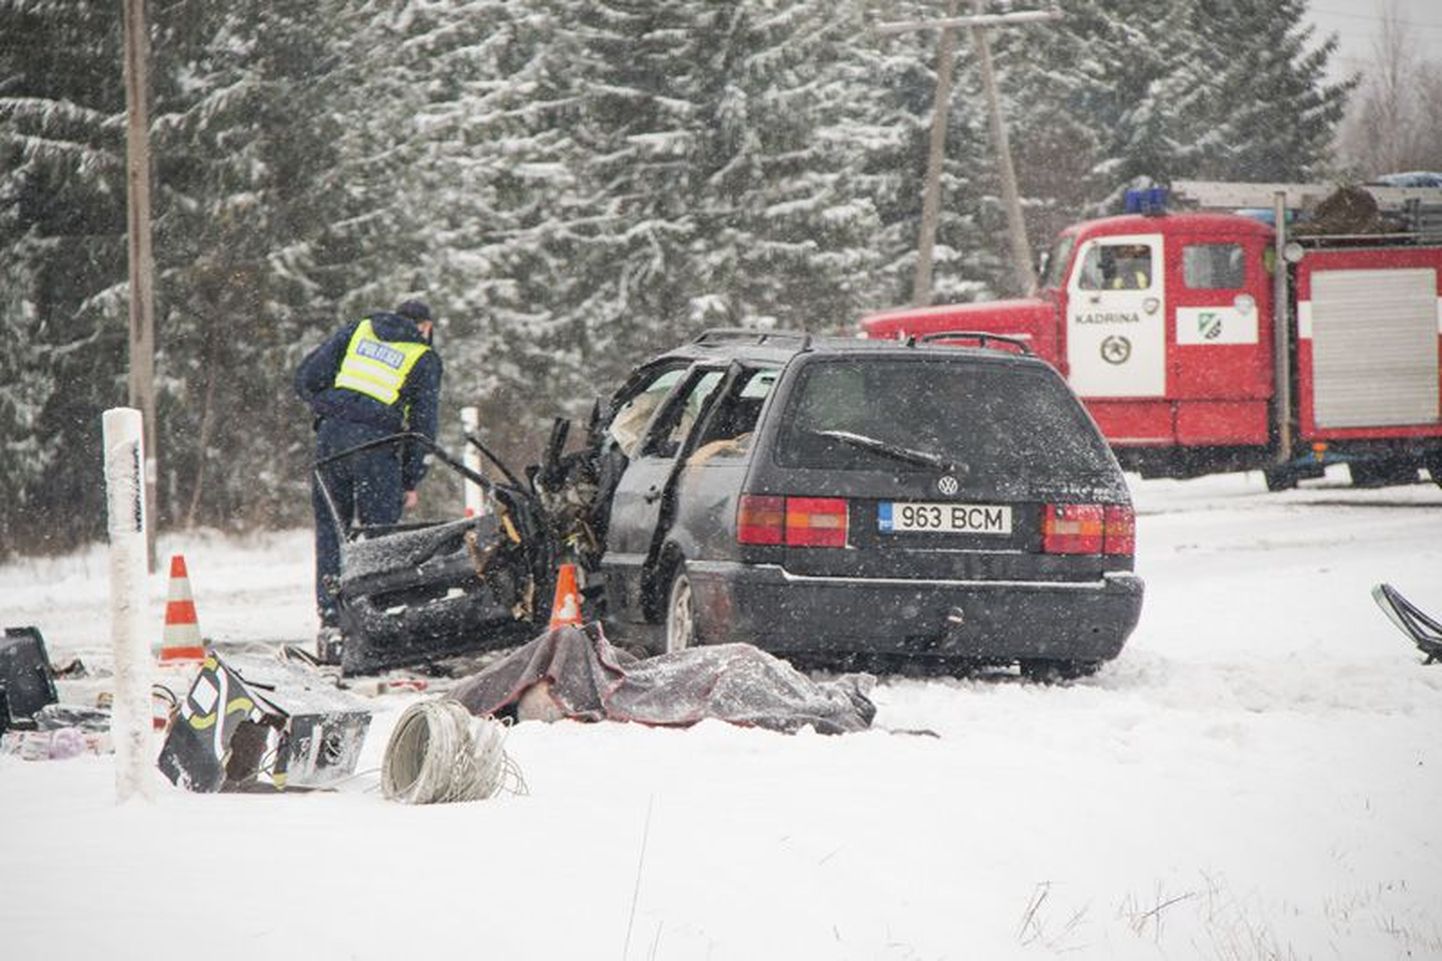 Eelmise aasta rängim õnnetus juhtus 3. novembril Kariväraval. Kaubiku ja sõiduauto kokkupõrkes hukkusid kõik autodes olnud kolm inimest.